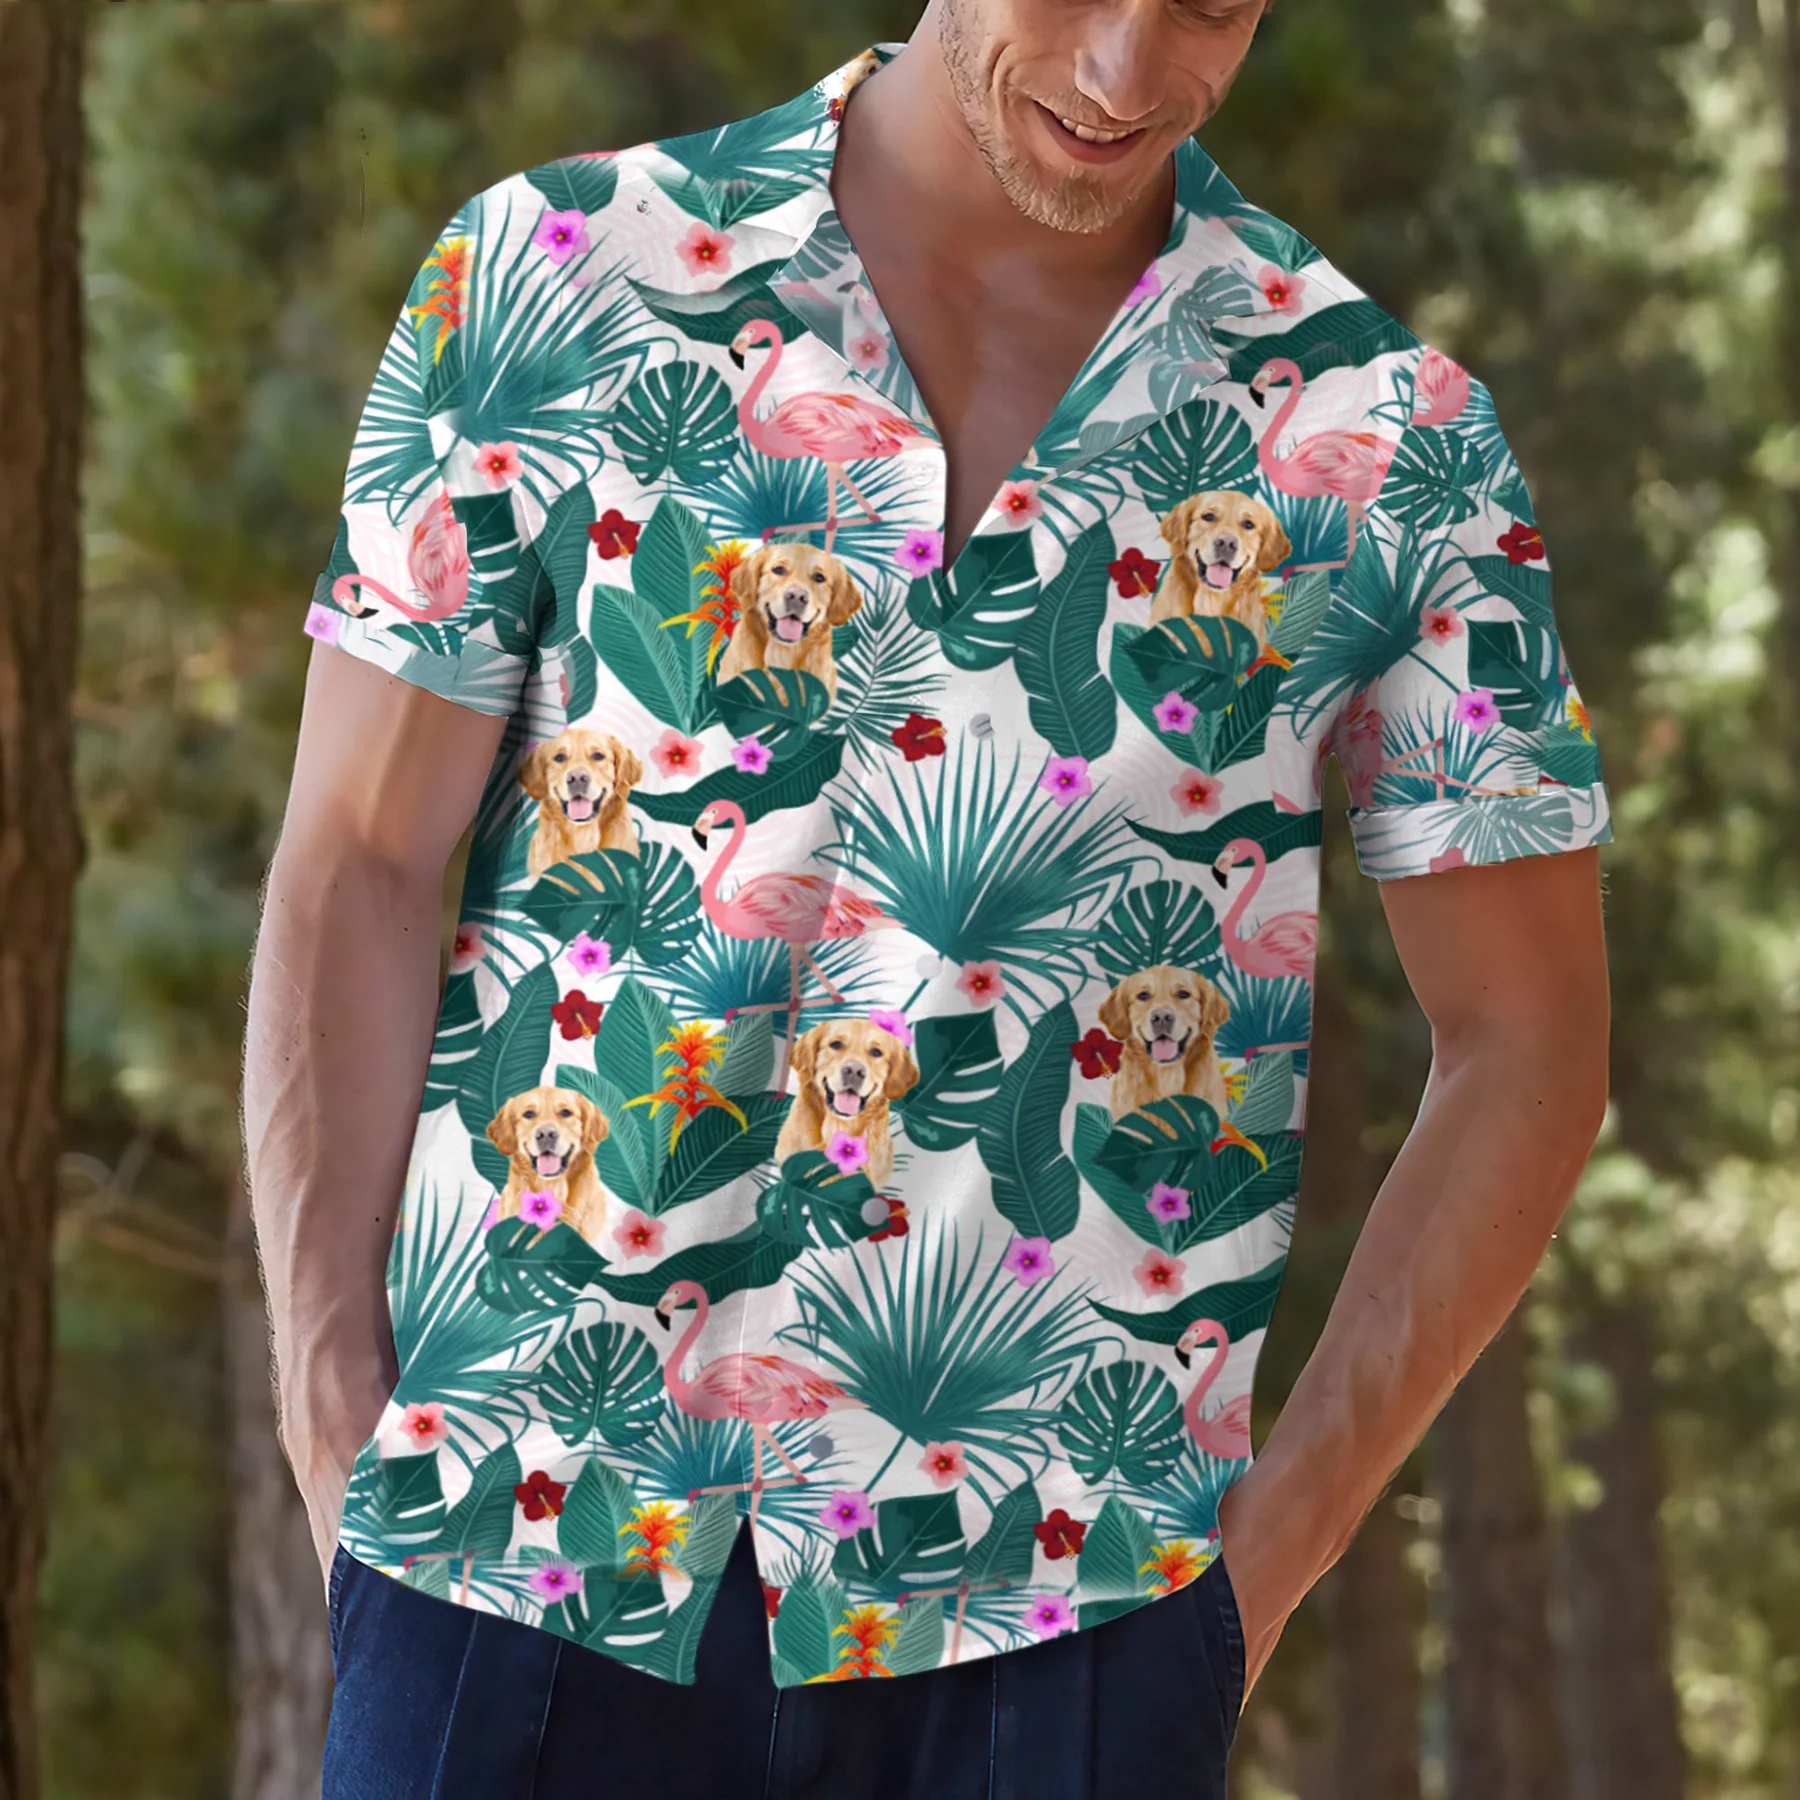 Custom Flamingo Hawaiian Shirt with Pet Face/ Personalized Dog Hawaiian Shirts from Photo/ Annyversary Gift